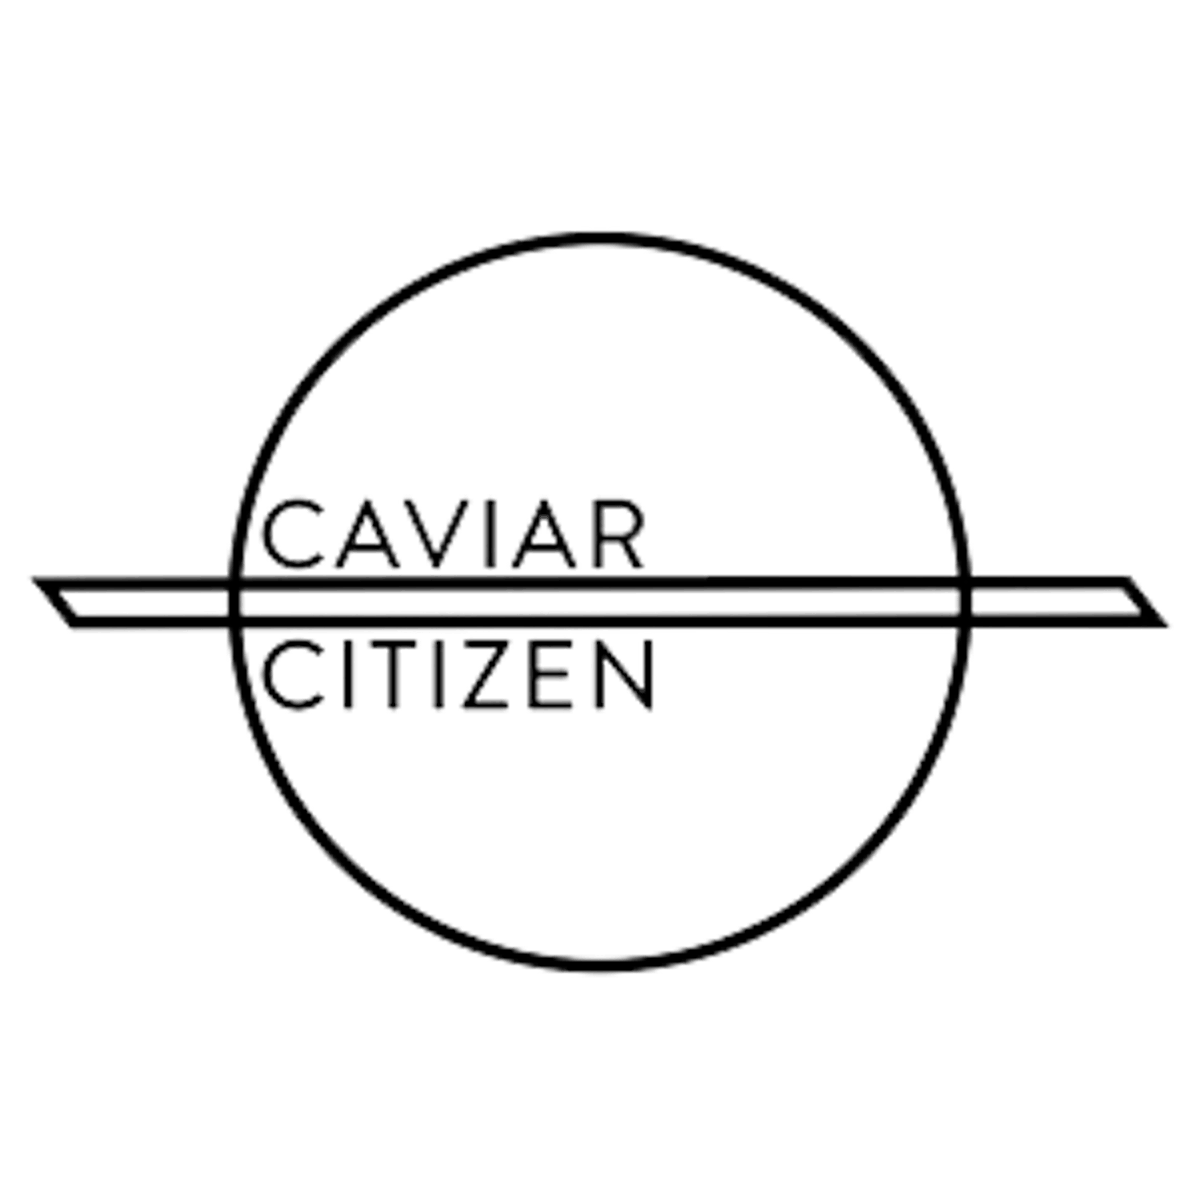 caviar citizen logo